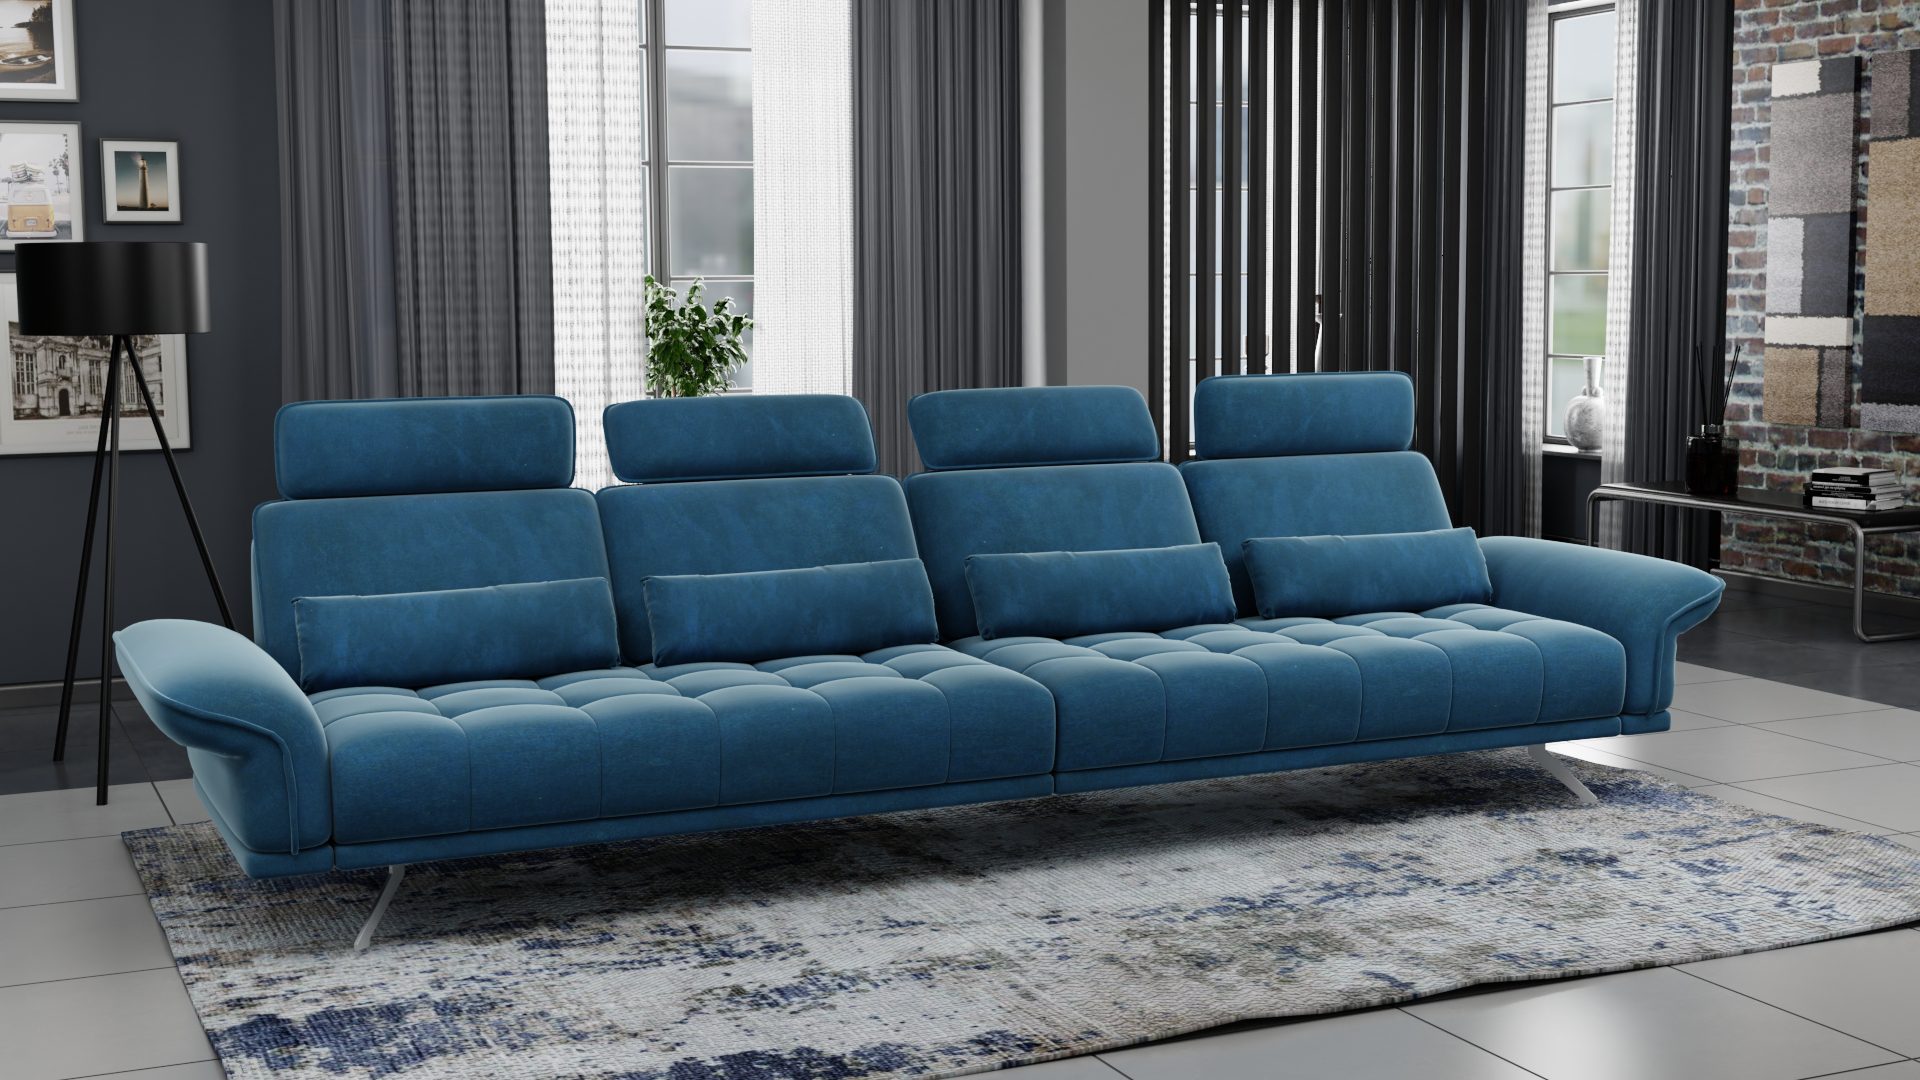 4x местные диваны (диваны на 4 места) - Мебель в Израиле - это DAX - высококачественная мебель в Израиле, Высокая функциональность и безупречный стиль: Хайфа, Ришон леЦион, Натания, Ашдод, Иерусалим, Кармиэль